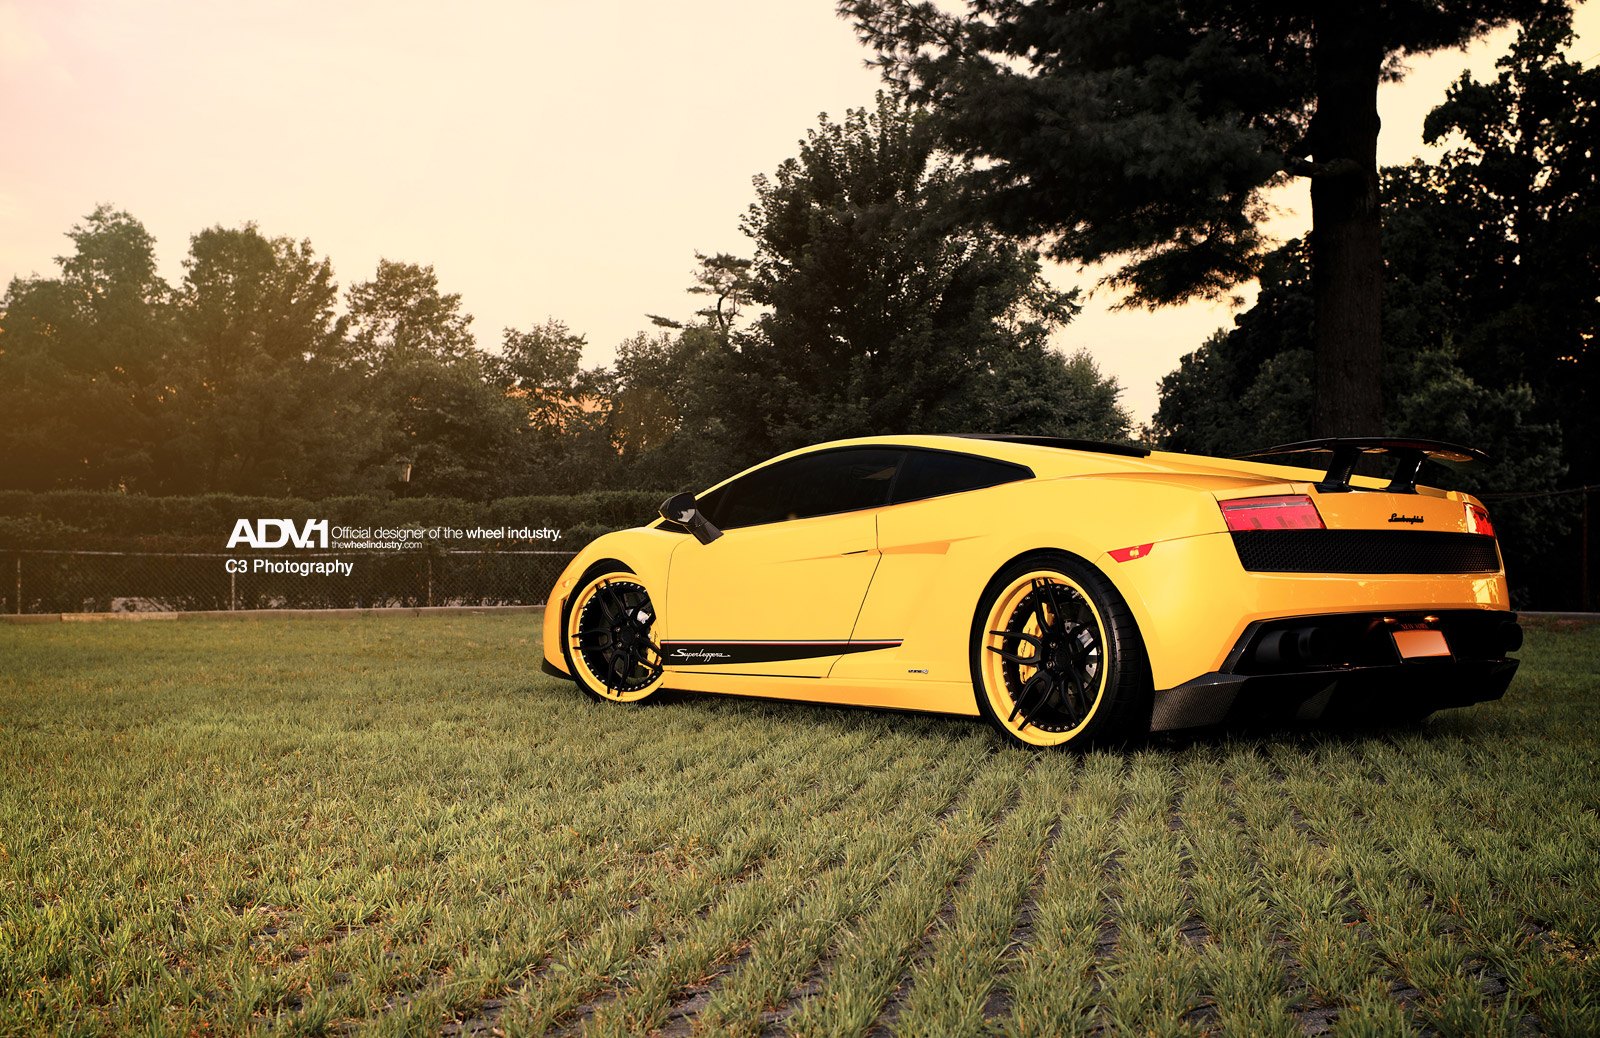 Yellow Lamborghini Gallardo with Carbon Fiber Rear Diffuser - Photo by ADV.1